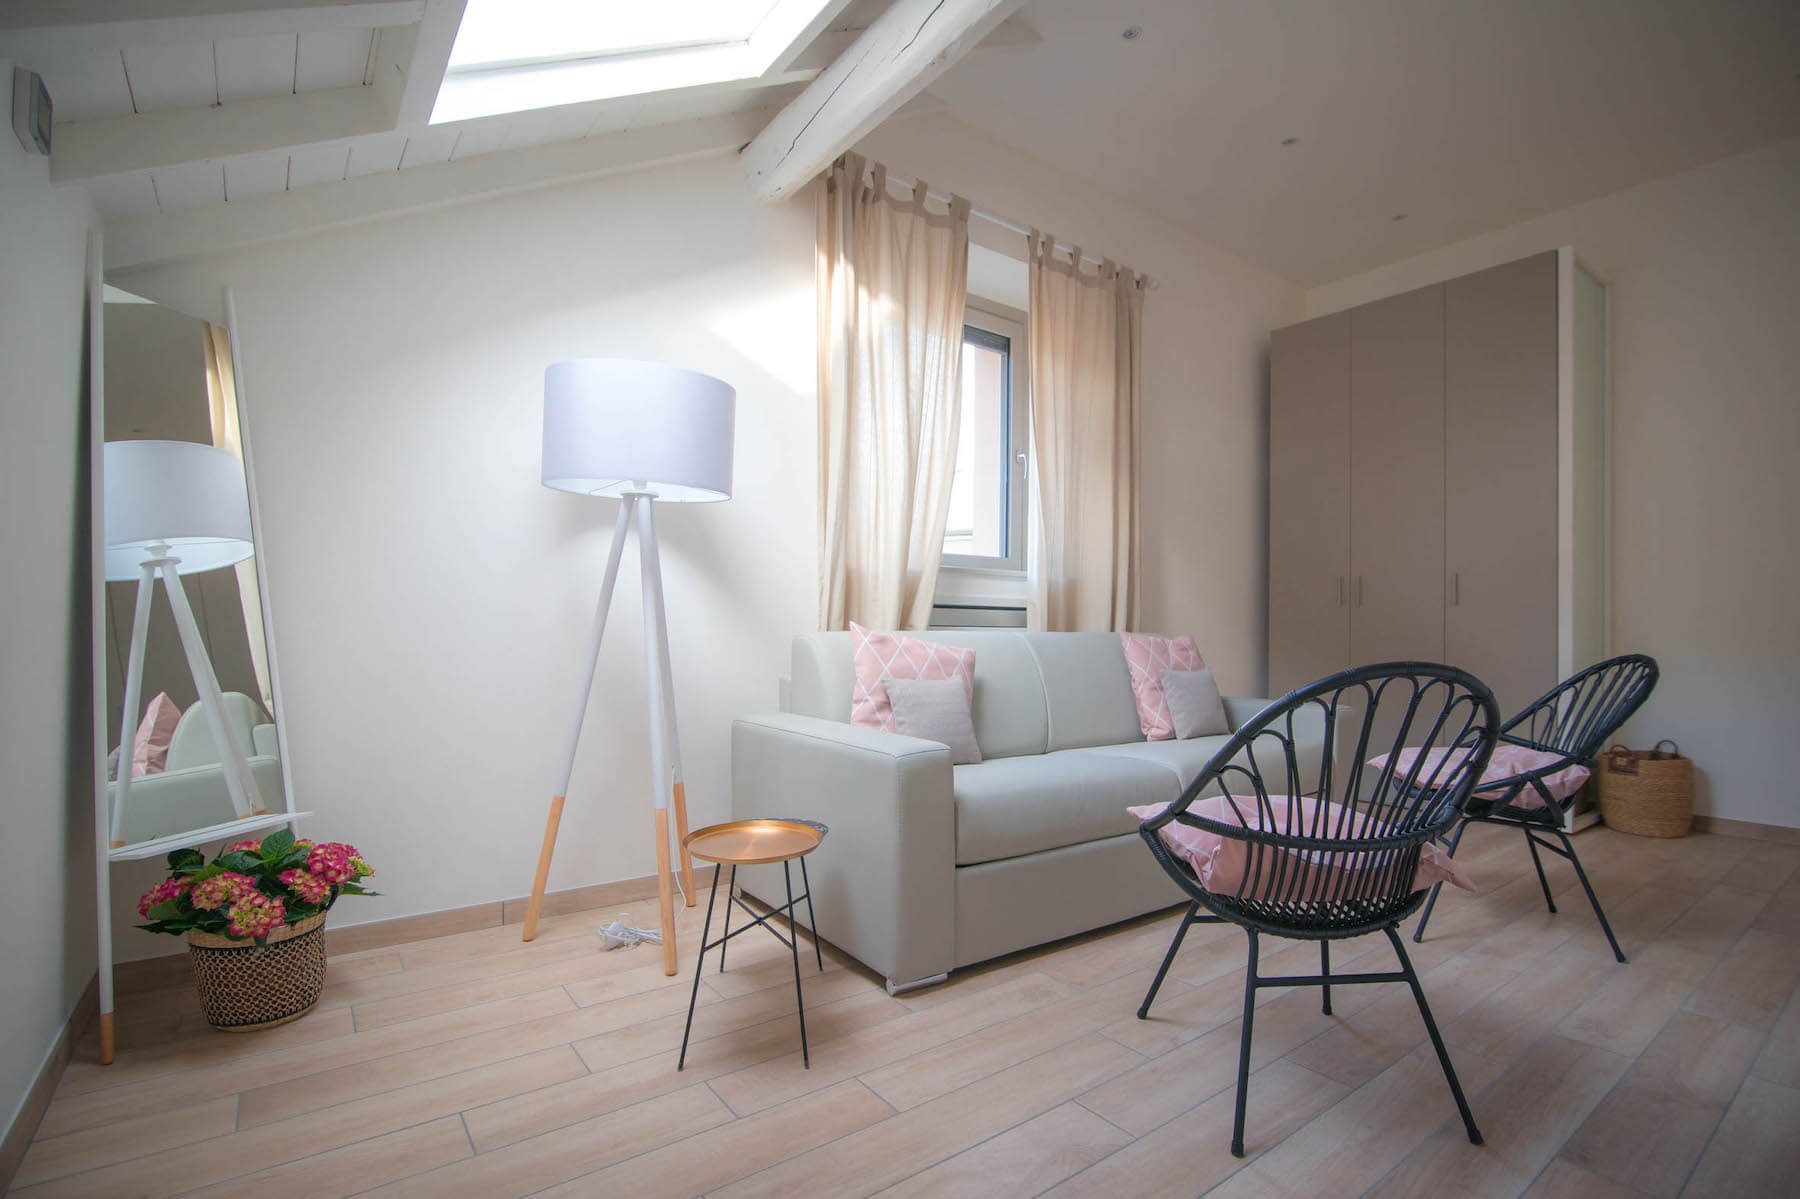 salotto con divano grigio, due sedie, armadio, lampada, specchio e piante decorative